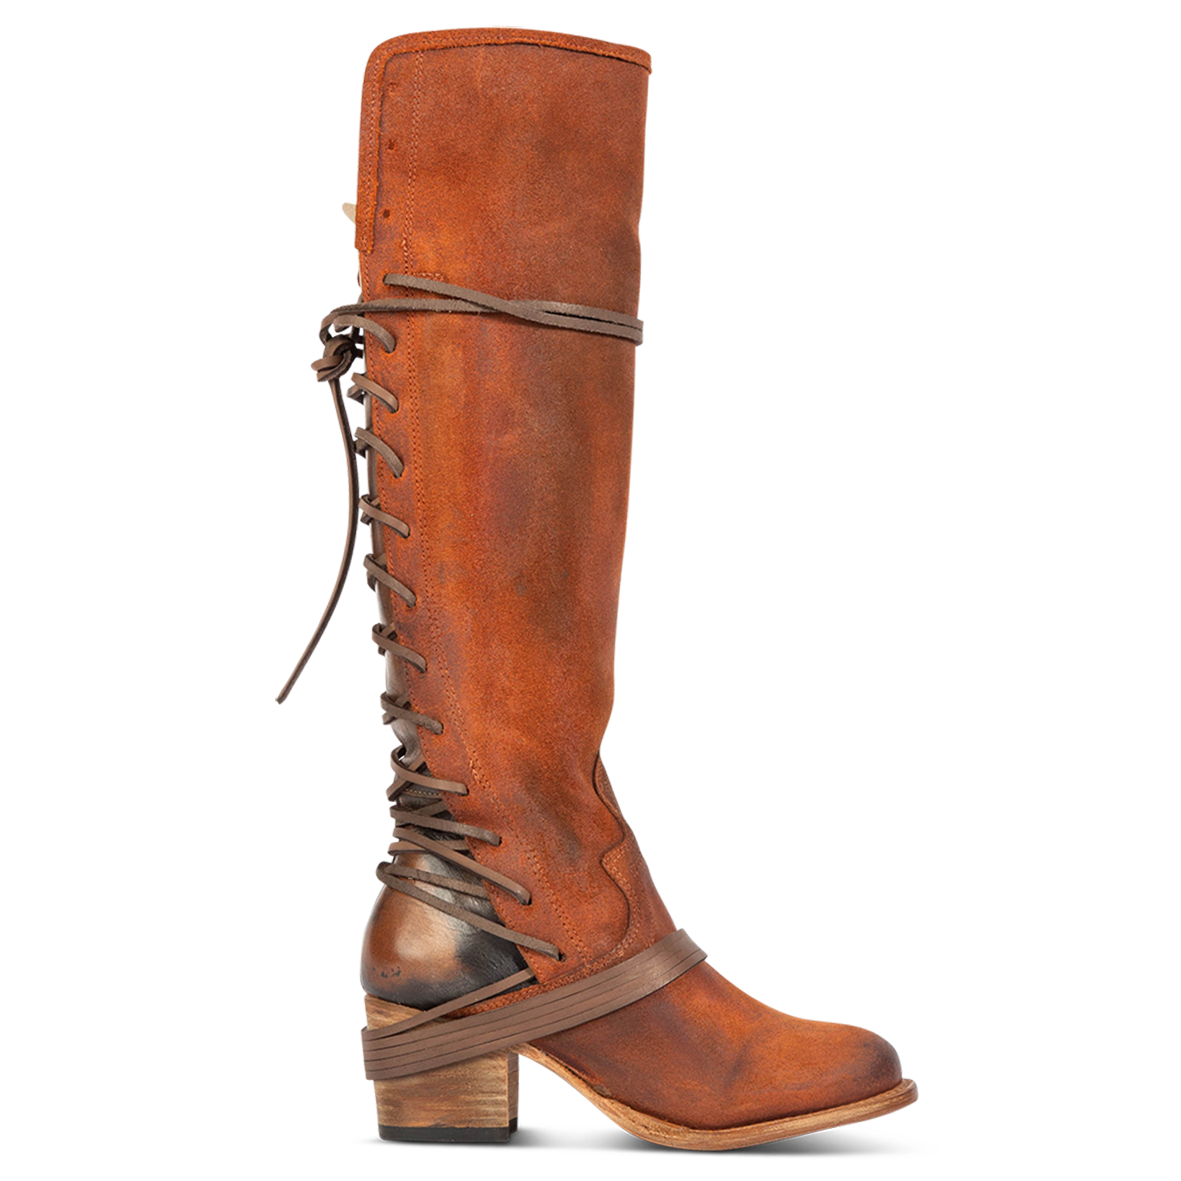 FREEBIRD women’s Coal rust suede knee high adjustable back lacing boot